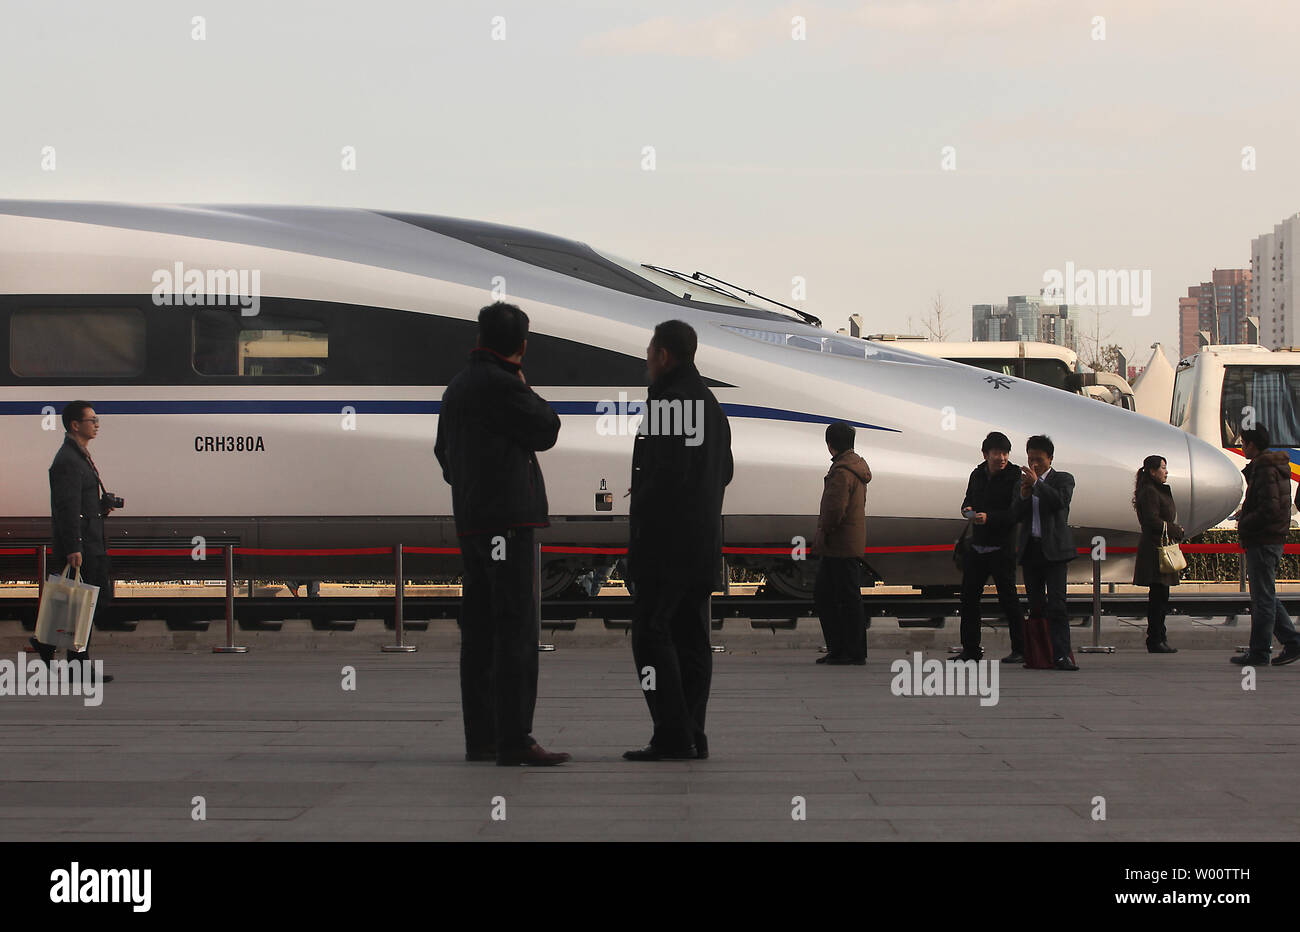 Besucher Blick auf in China entwickelten Bullet Train, die CRH 380 A, der Zug, der eine Höchstgeschwindigkeit von 302 Kilometer pro Stunde bei einem Testlauf auf dem beijing-shanghai in der vergangenen Woche eingestellt, auf Anzeige außerhalb der Veranstaltungsort für die 7. Weltkongress auf High Speed Rail in Peking am 8. Dezember 2010. China führt jetzt die Welt mit 4.680 Meilen des Hochgeschwindigkeitsnetzes, und Tausende von Meilen von neuen High-Speed-Bahnen sind im Bau bundesweit. UPI/Stephen Rasierer Stockfoto